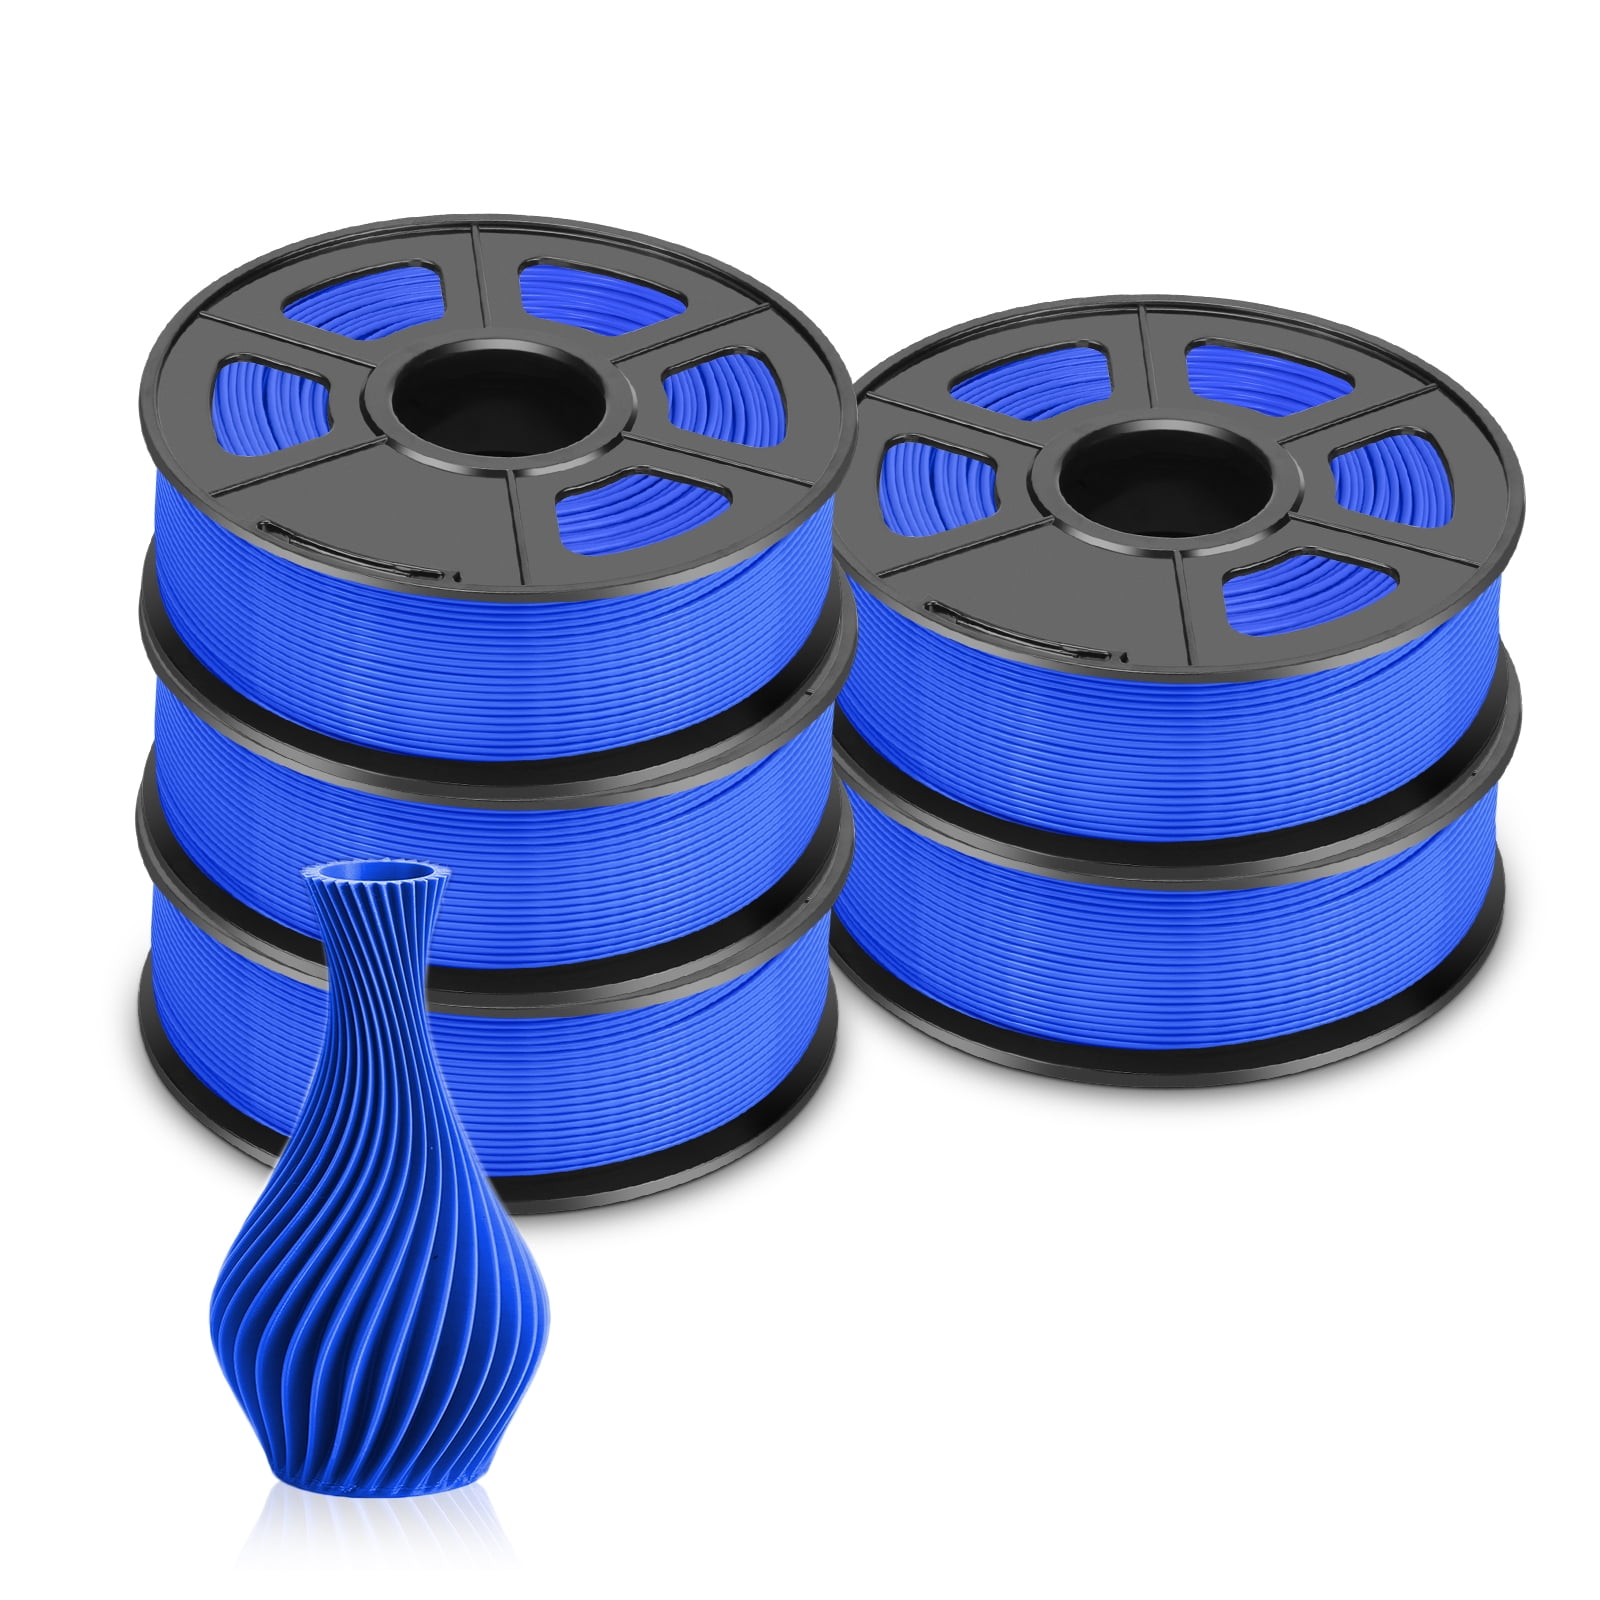 SUNLU 3D Printer Filament Bundle, PLA Plus Filament 10KG 1.75mm, Neatly  Wound Filament for Most 3D Printer, 10 Colors, 1kg Spool